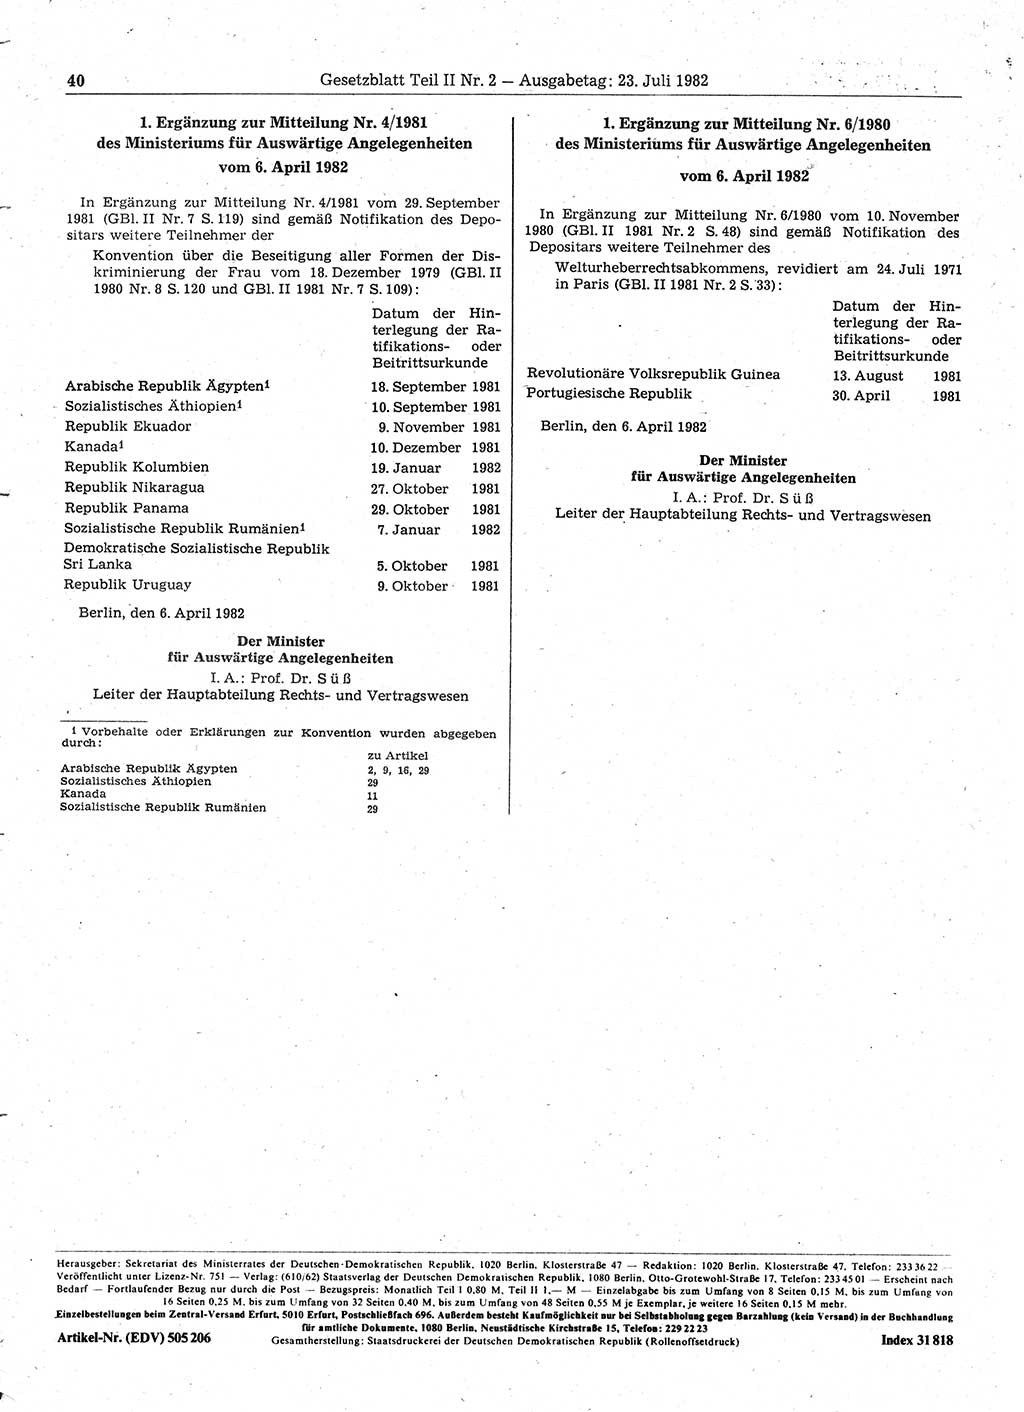 Gesetzblatt (GBl.) der Deutschen Demokratischen Republik (DDR) Teil ⅠⅠ 1982, Seite 40 (GBl. DDR ⅠⅠ 1982, S. 40)